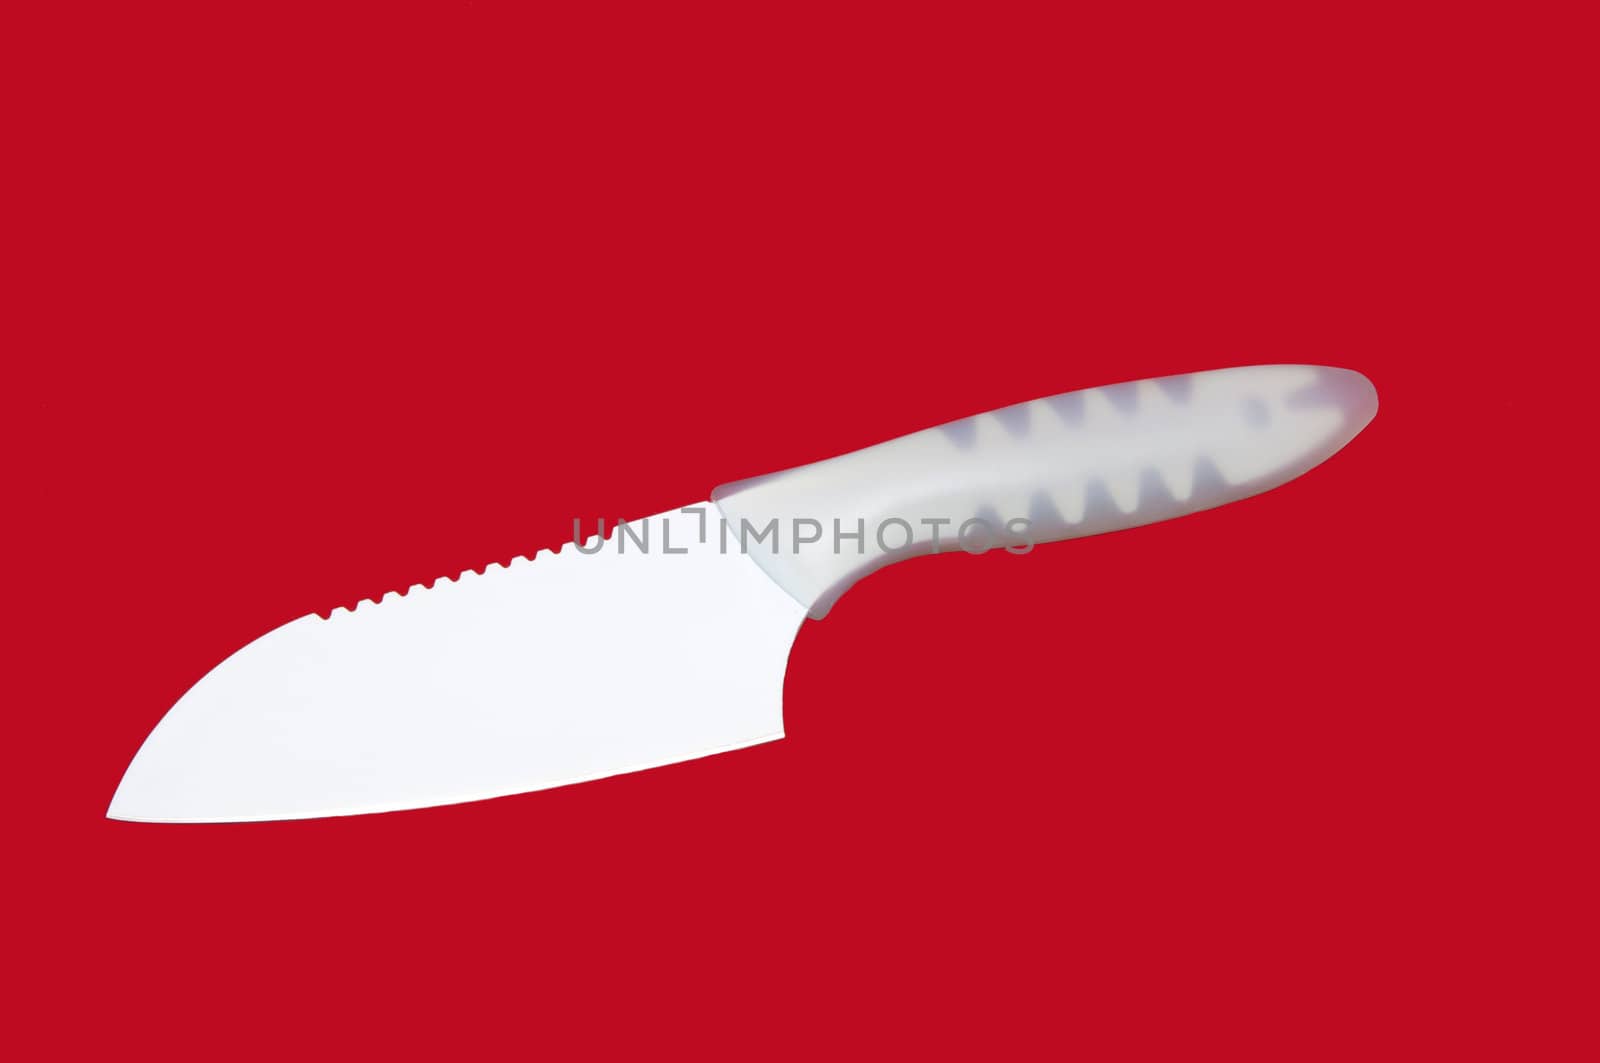 kitchen knife by Lester120